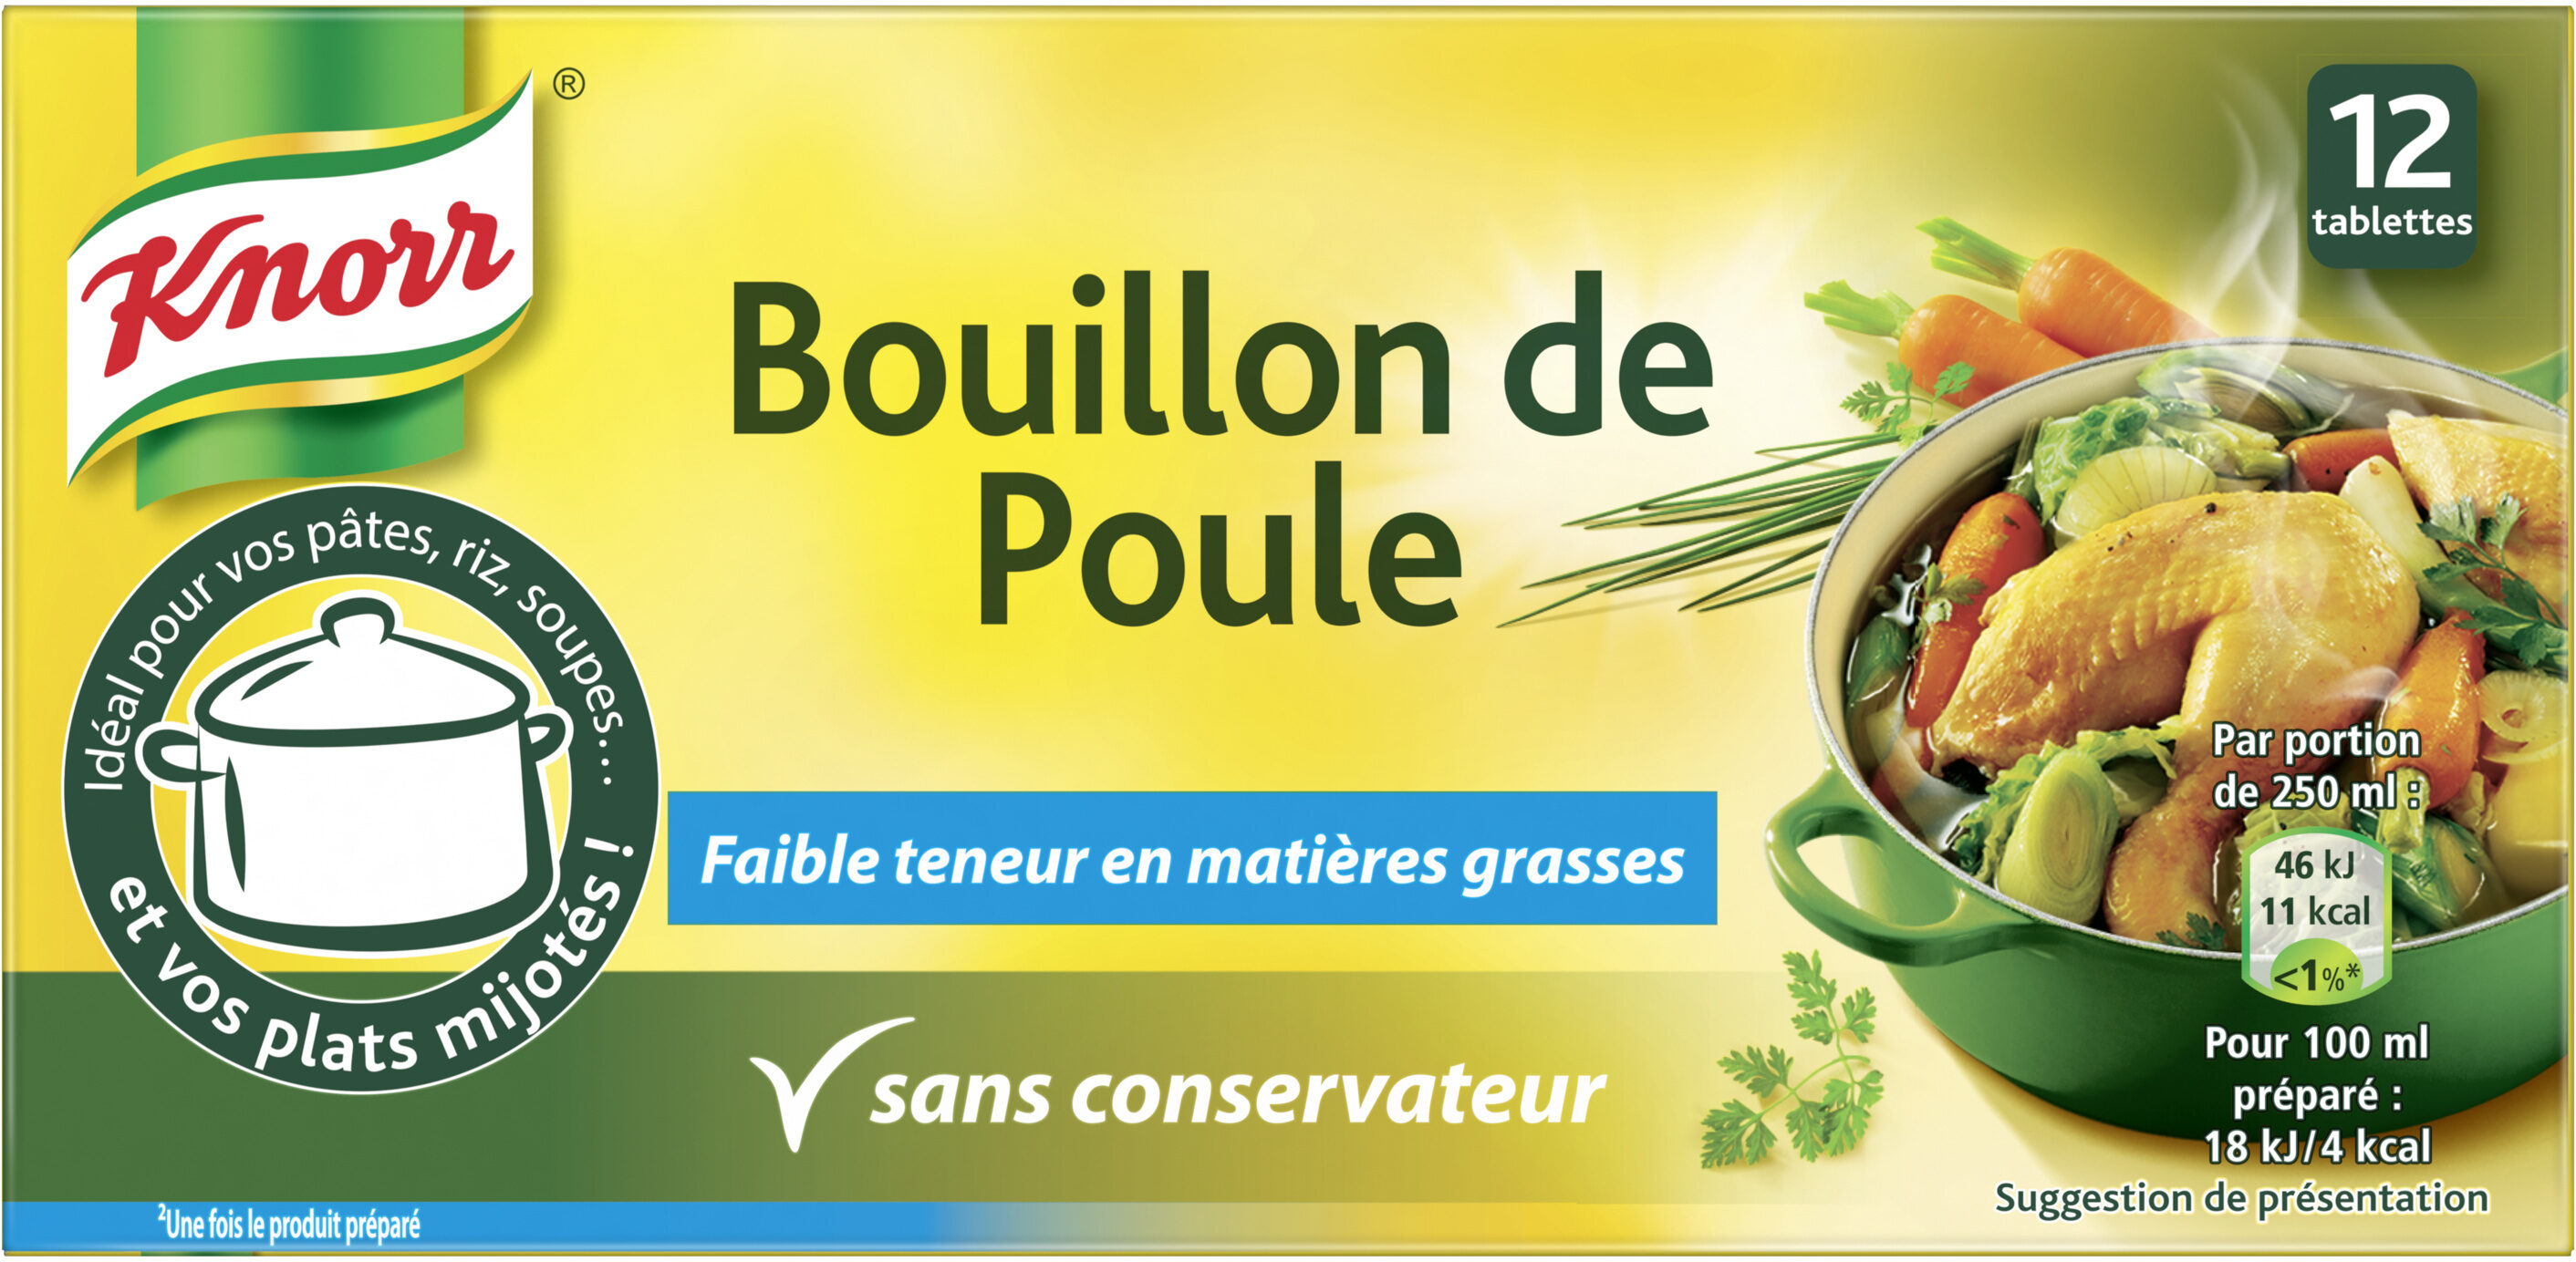 Knorr ® Bouillon Poule Dégraissé 12 tablettes de 10 g = 120g (24 portions) - Product - fr